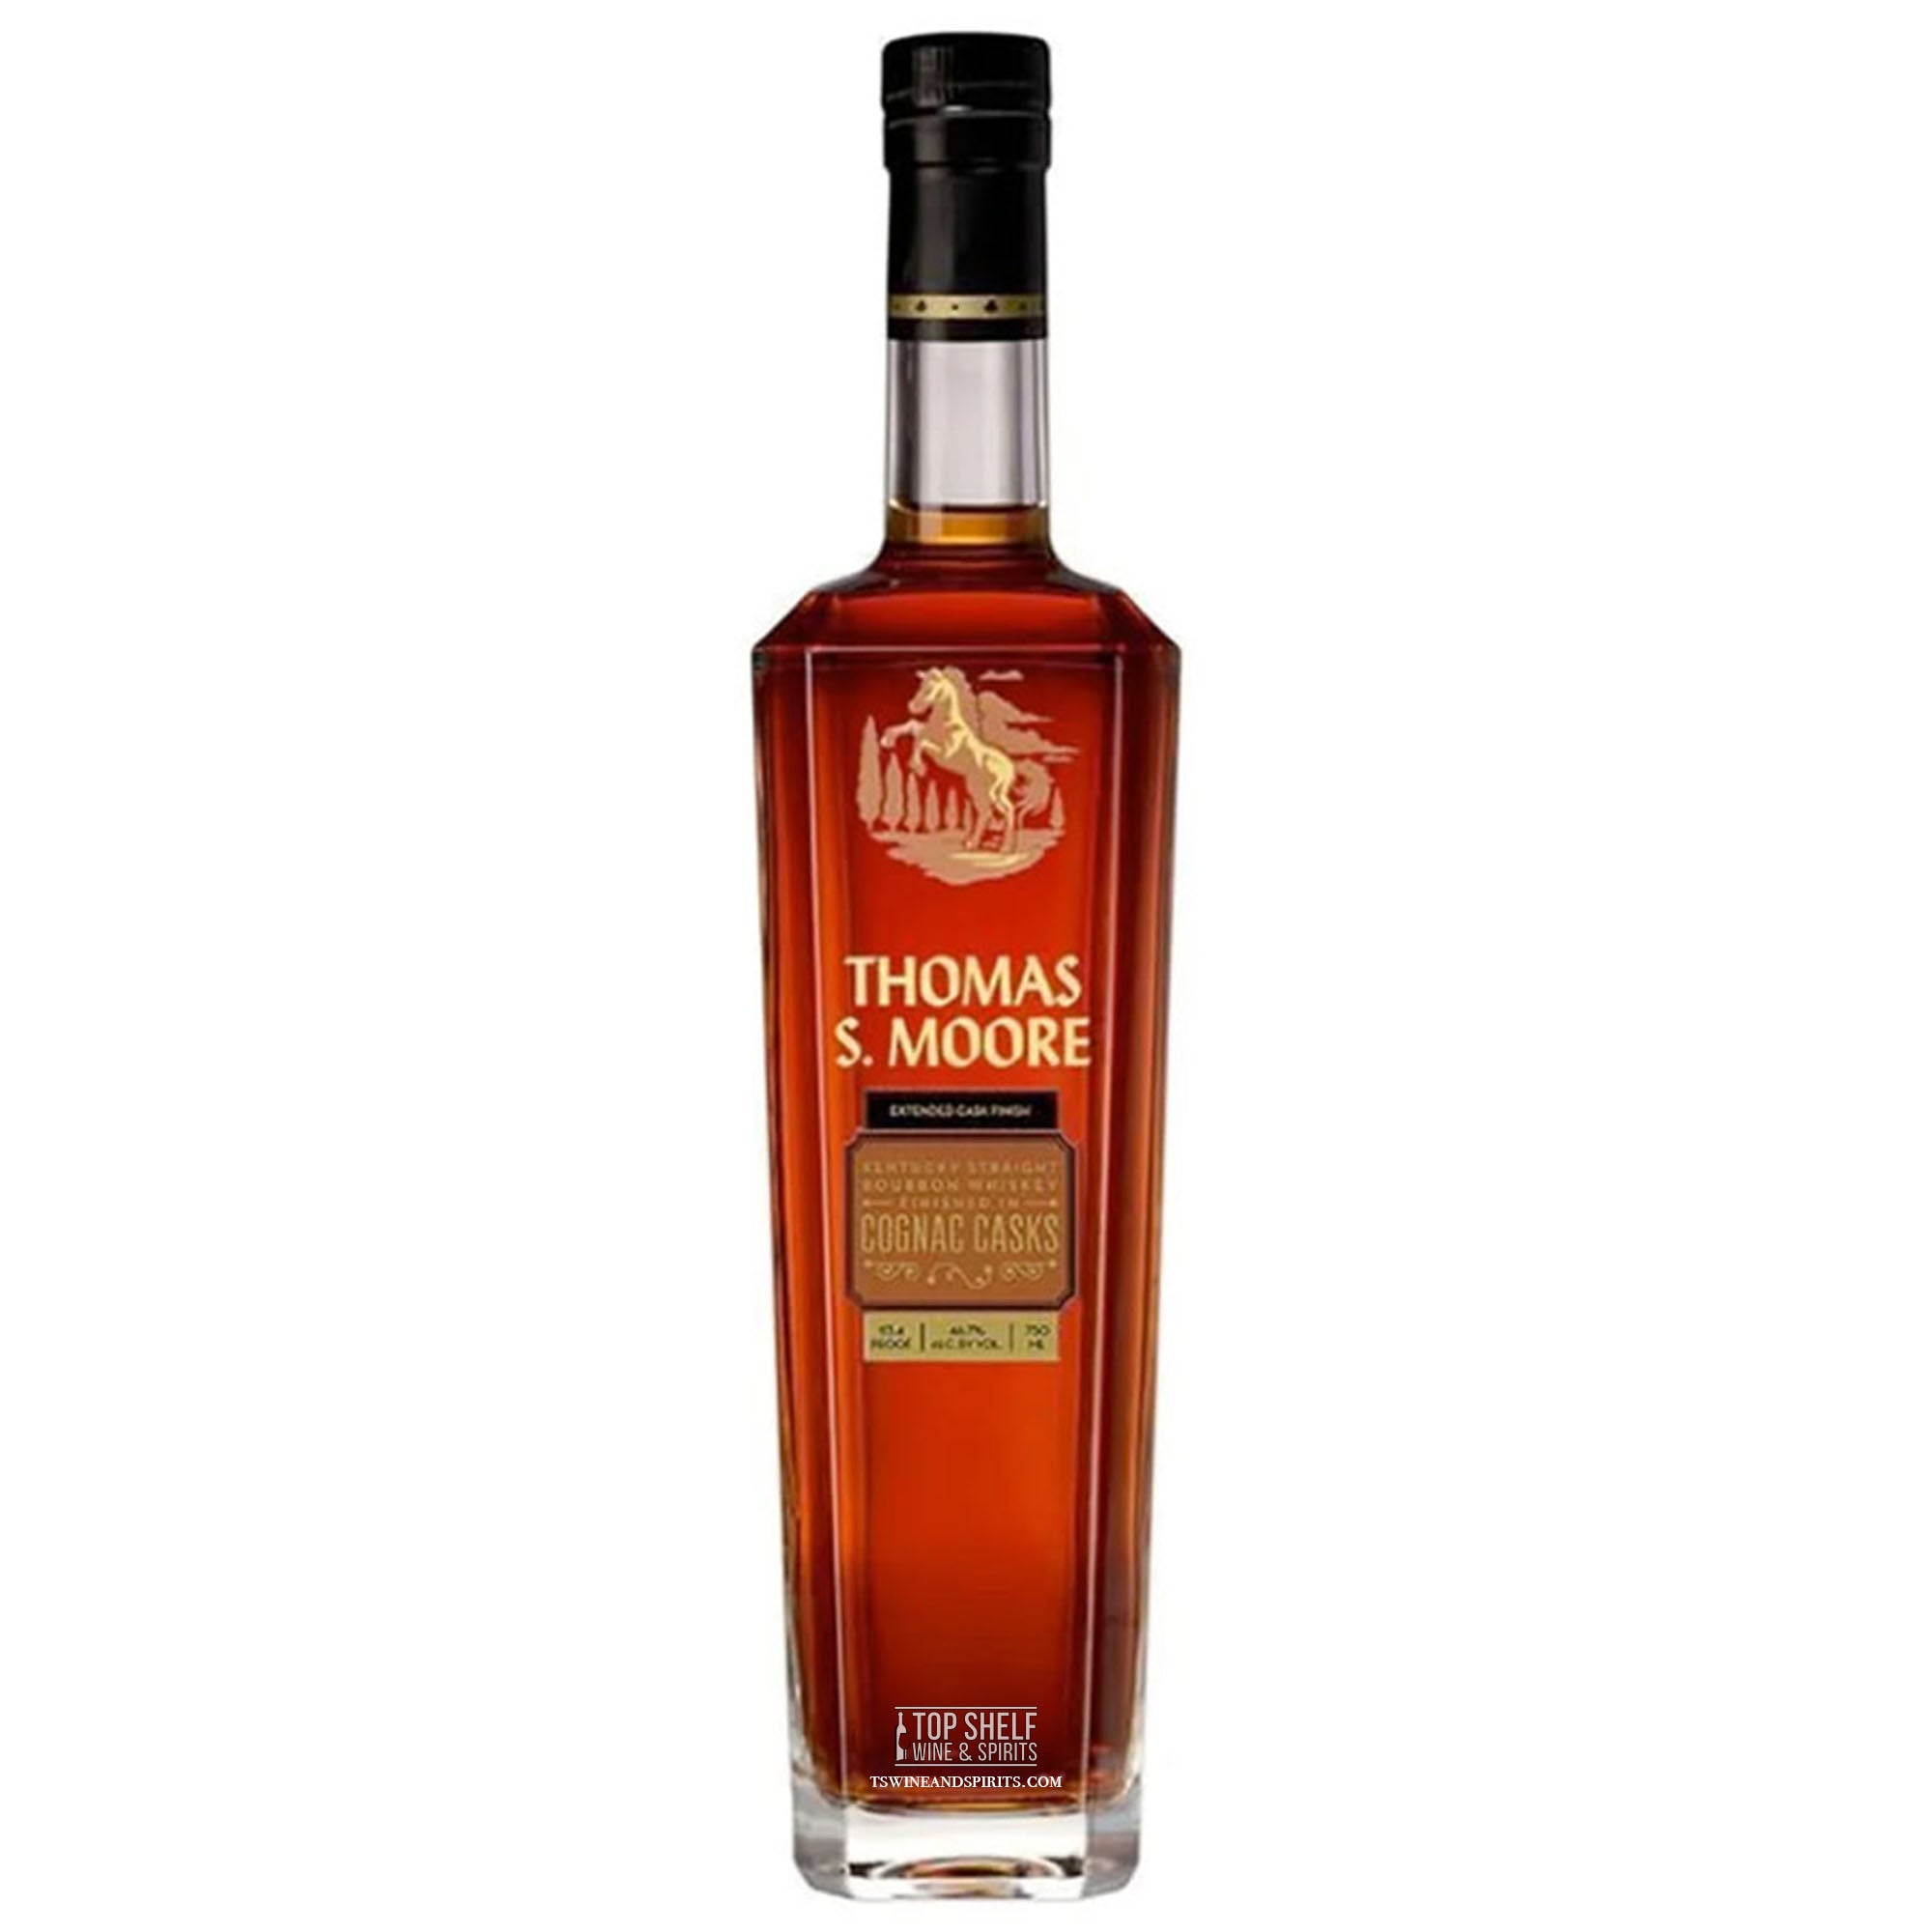 Thomas S. Moore Cognac Cask Finished Bourbon